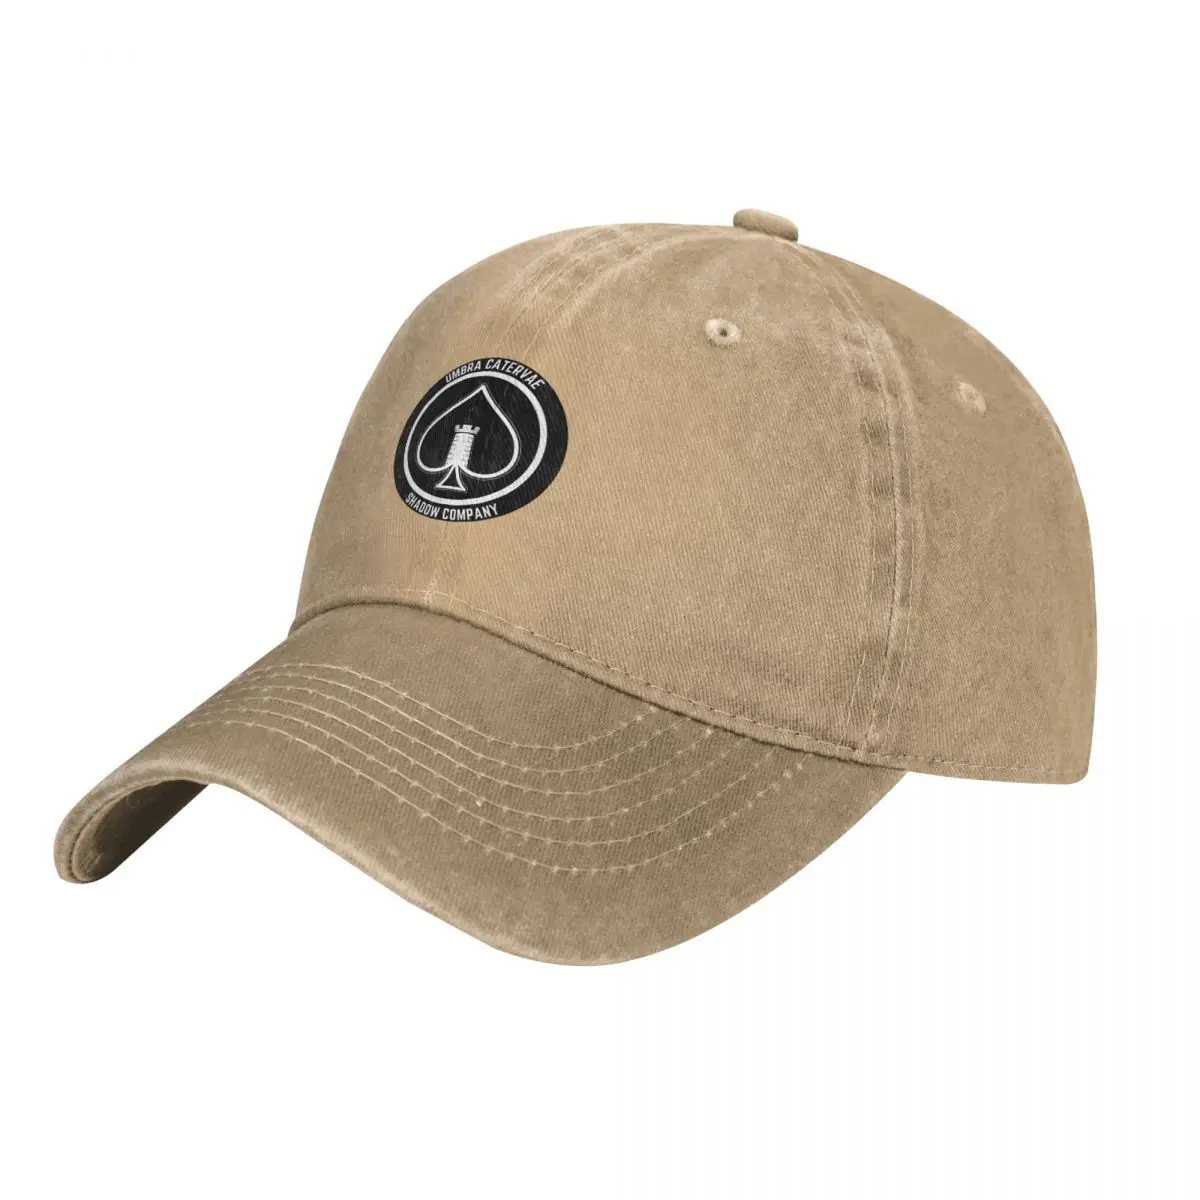 Shadow Company Emblem Cap Cowboy Hat bucket hat Sun cap military tactica... - £17.17 GBP